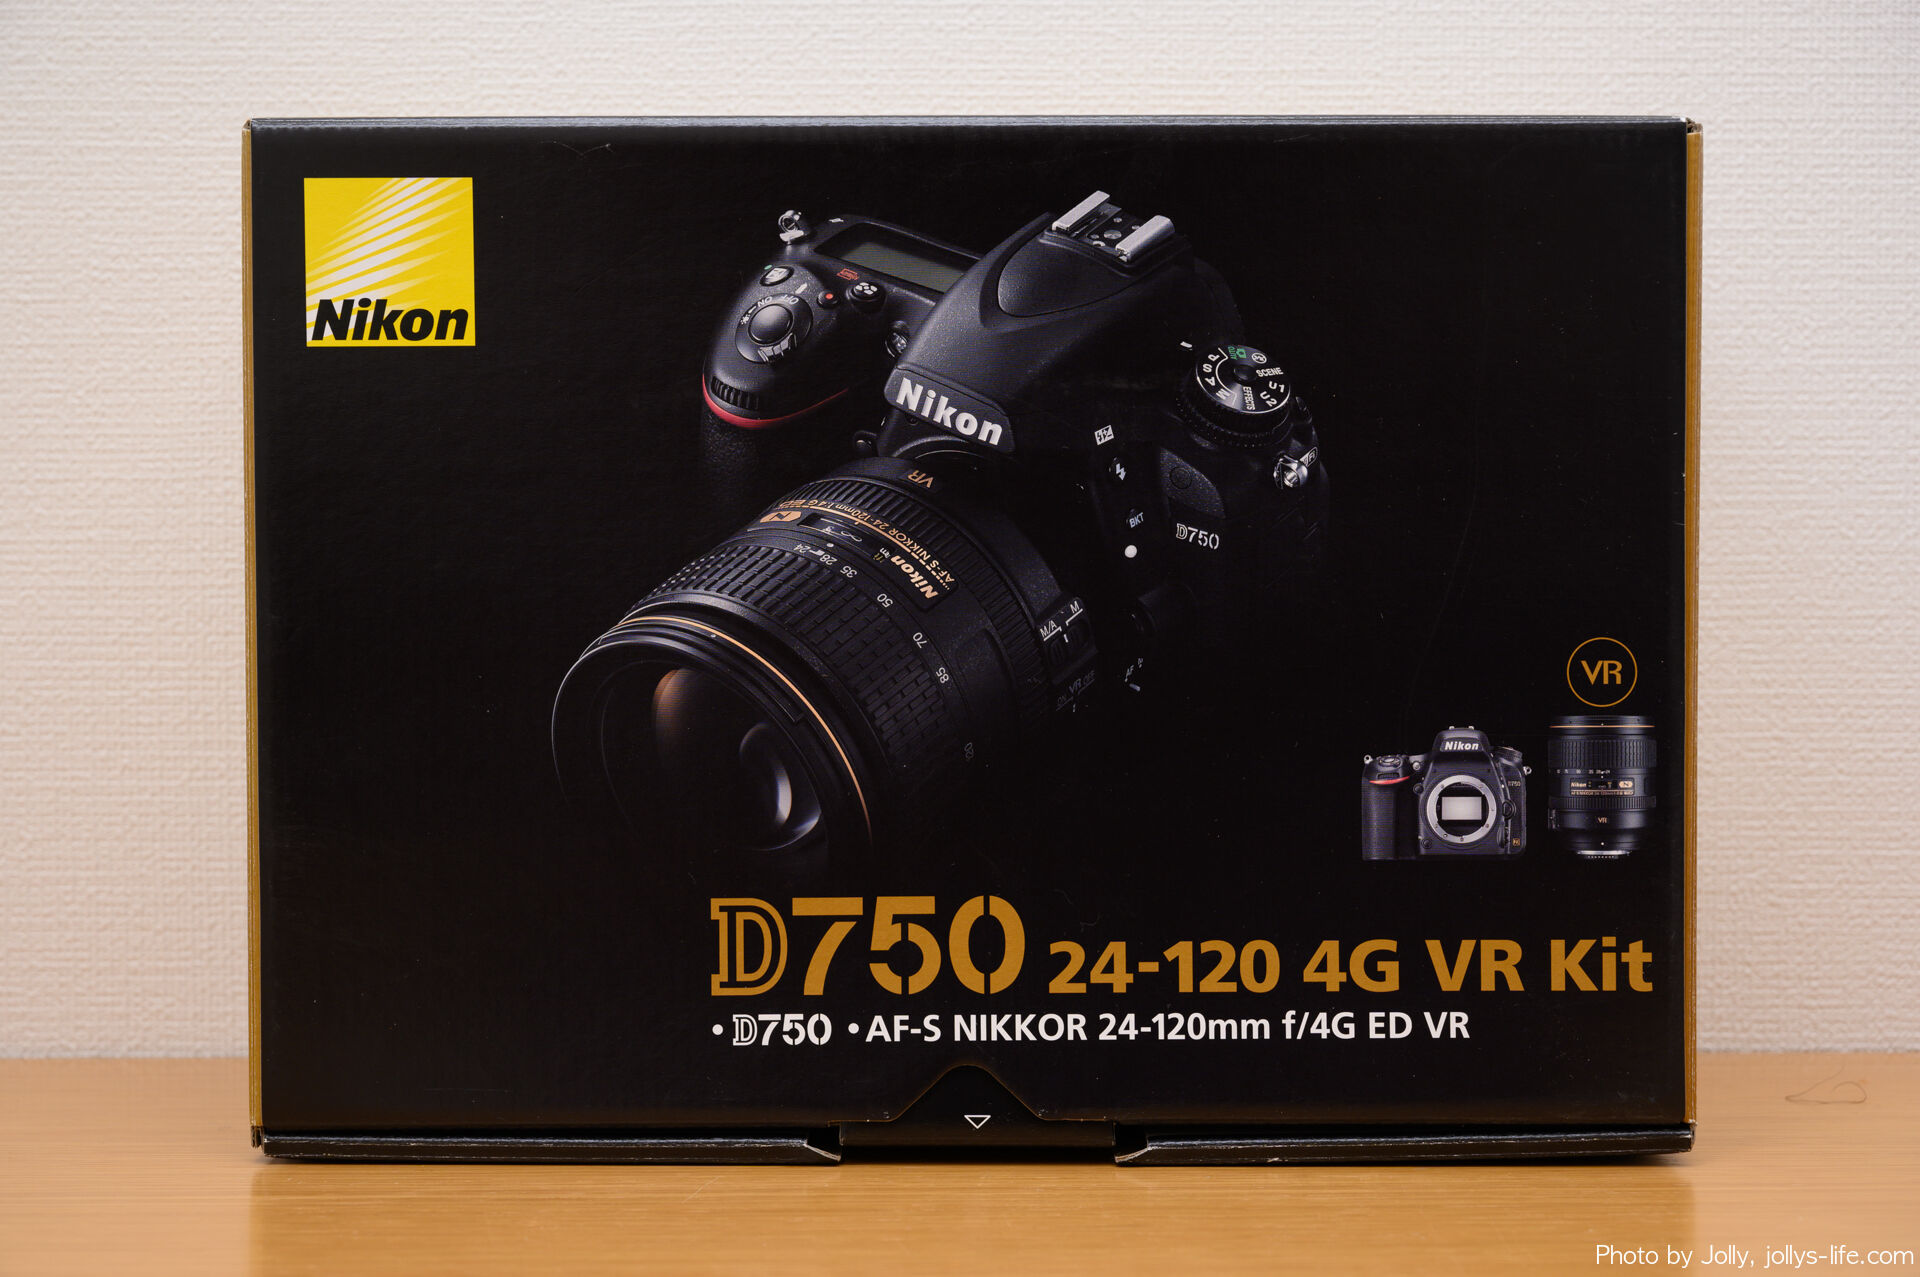 75400円 衝撃特価 引越し期間の為値下げ可 Nikon D750 24-120 VR レンズキット